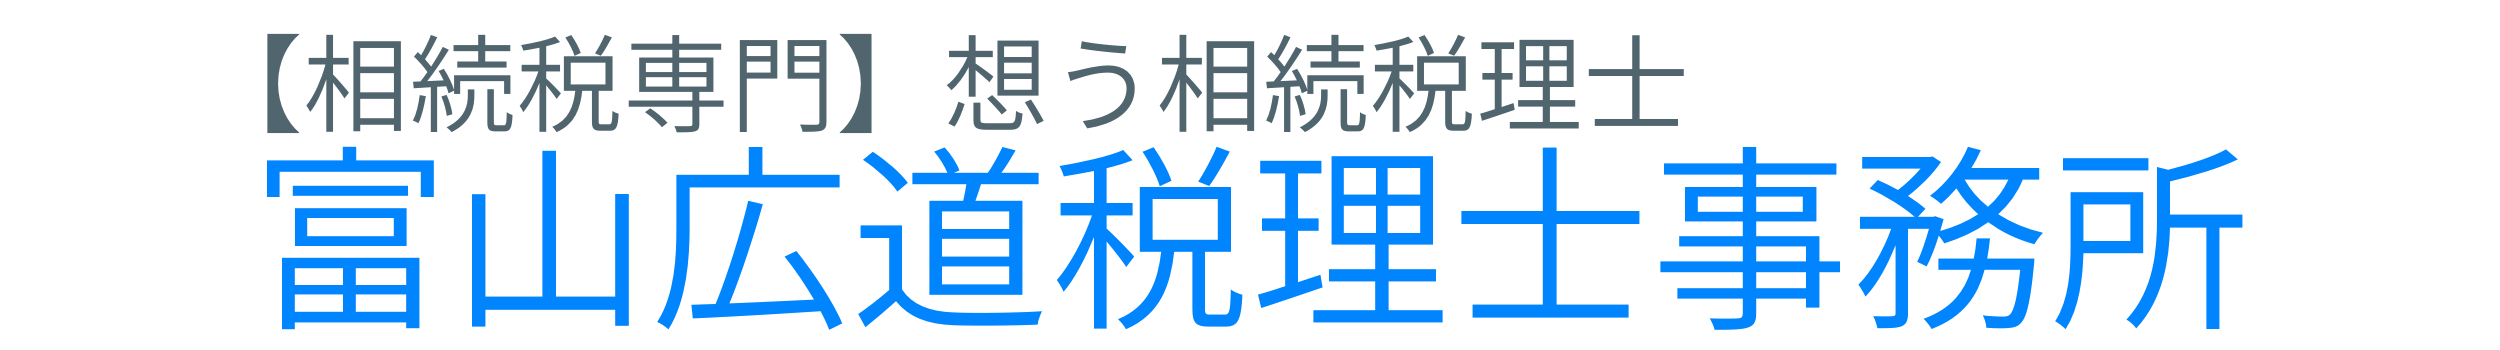 【相続税専門】富山広道税理士事務所